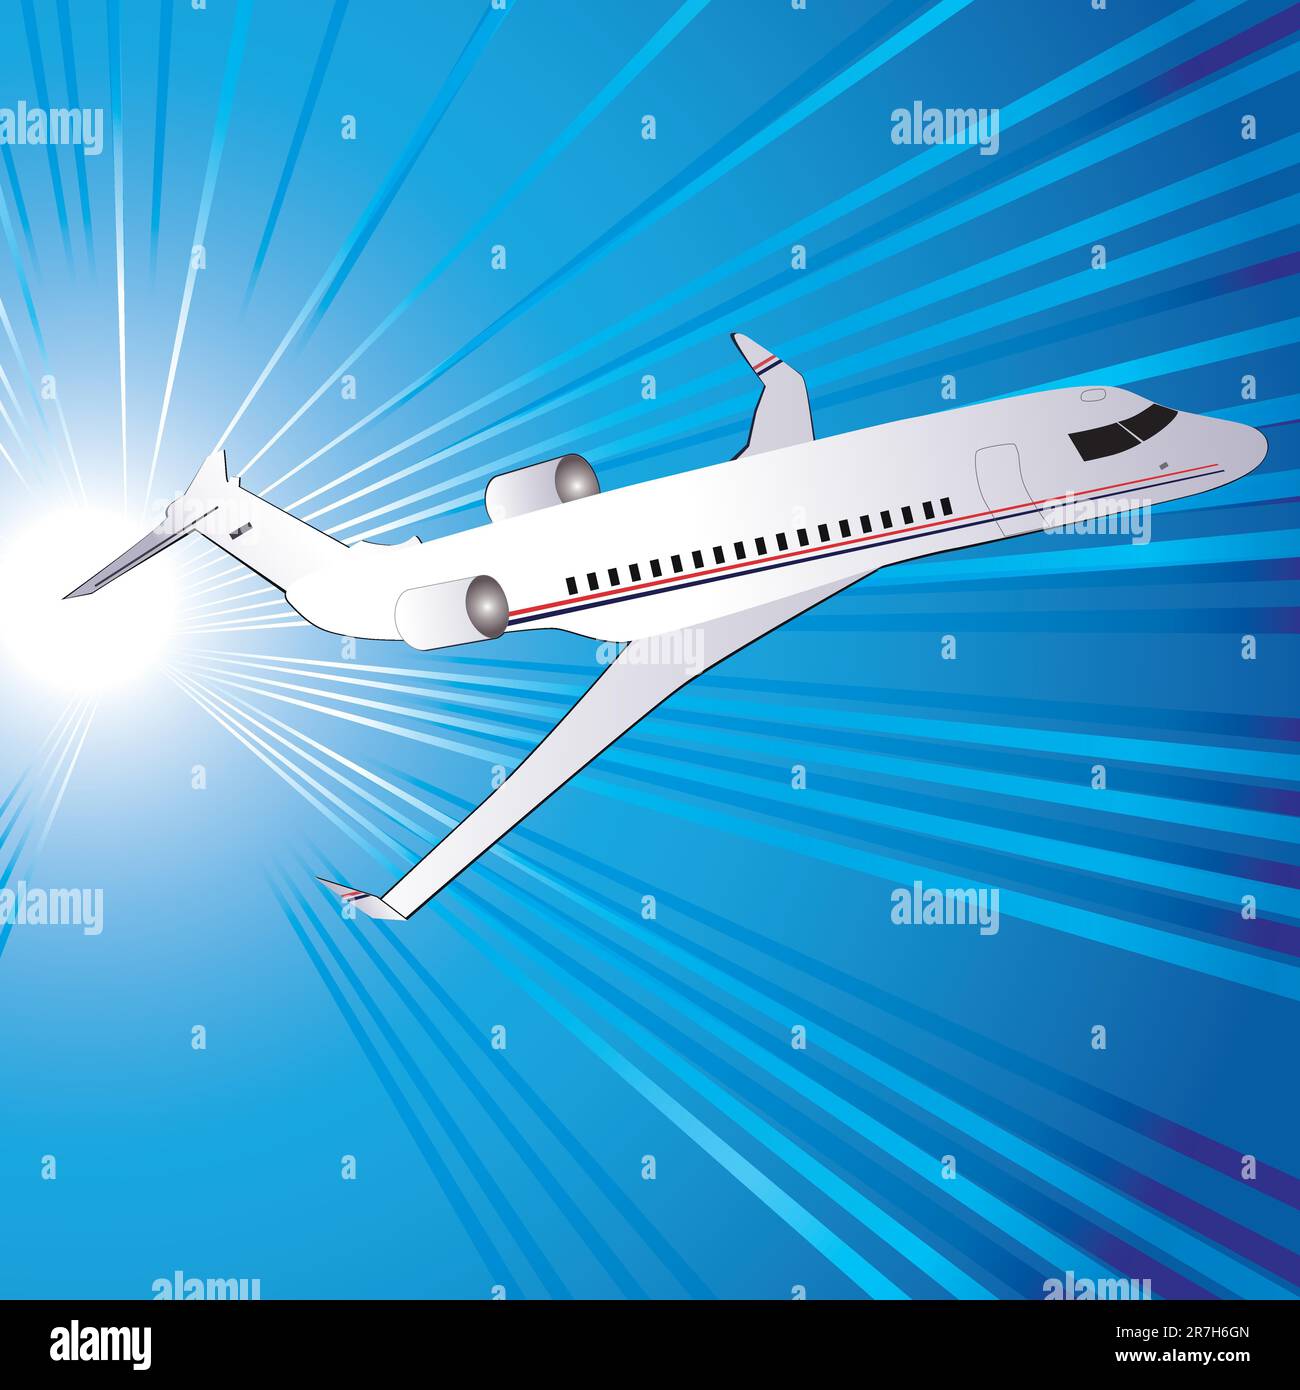 Modèle avec avion, illustration vectorielle. Eps10. Version vectorielle de cette image également disponible dans mon portfolio. Illustration de Vecteur